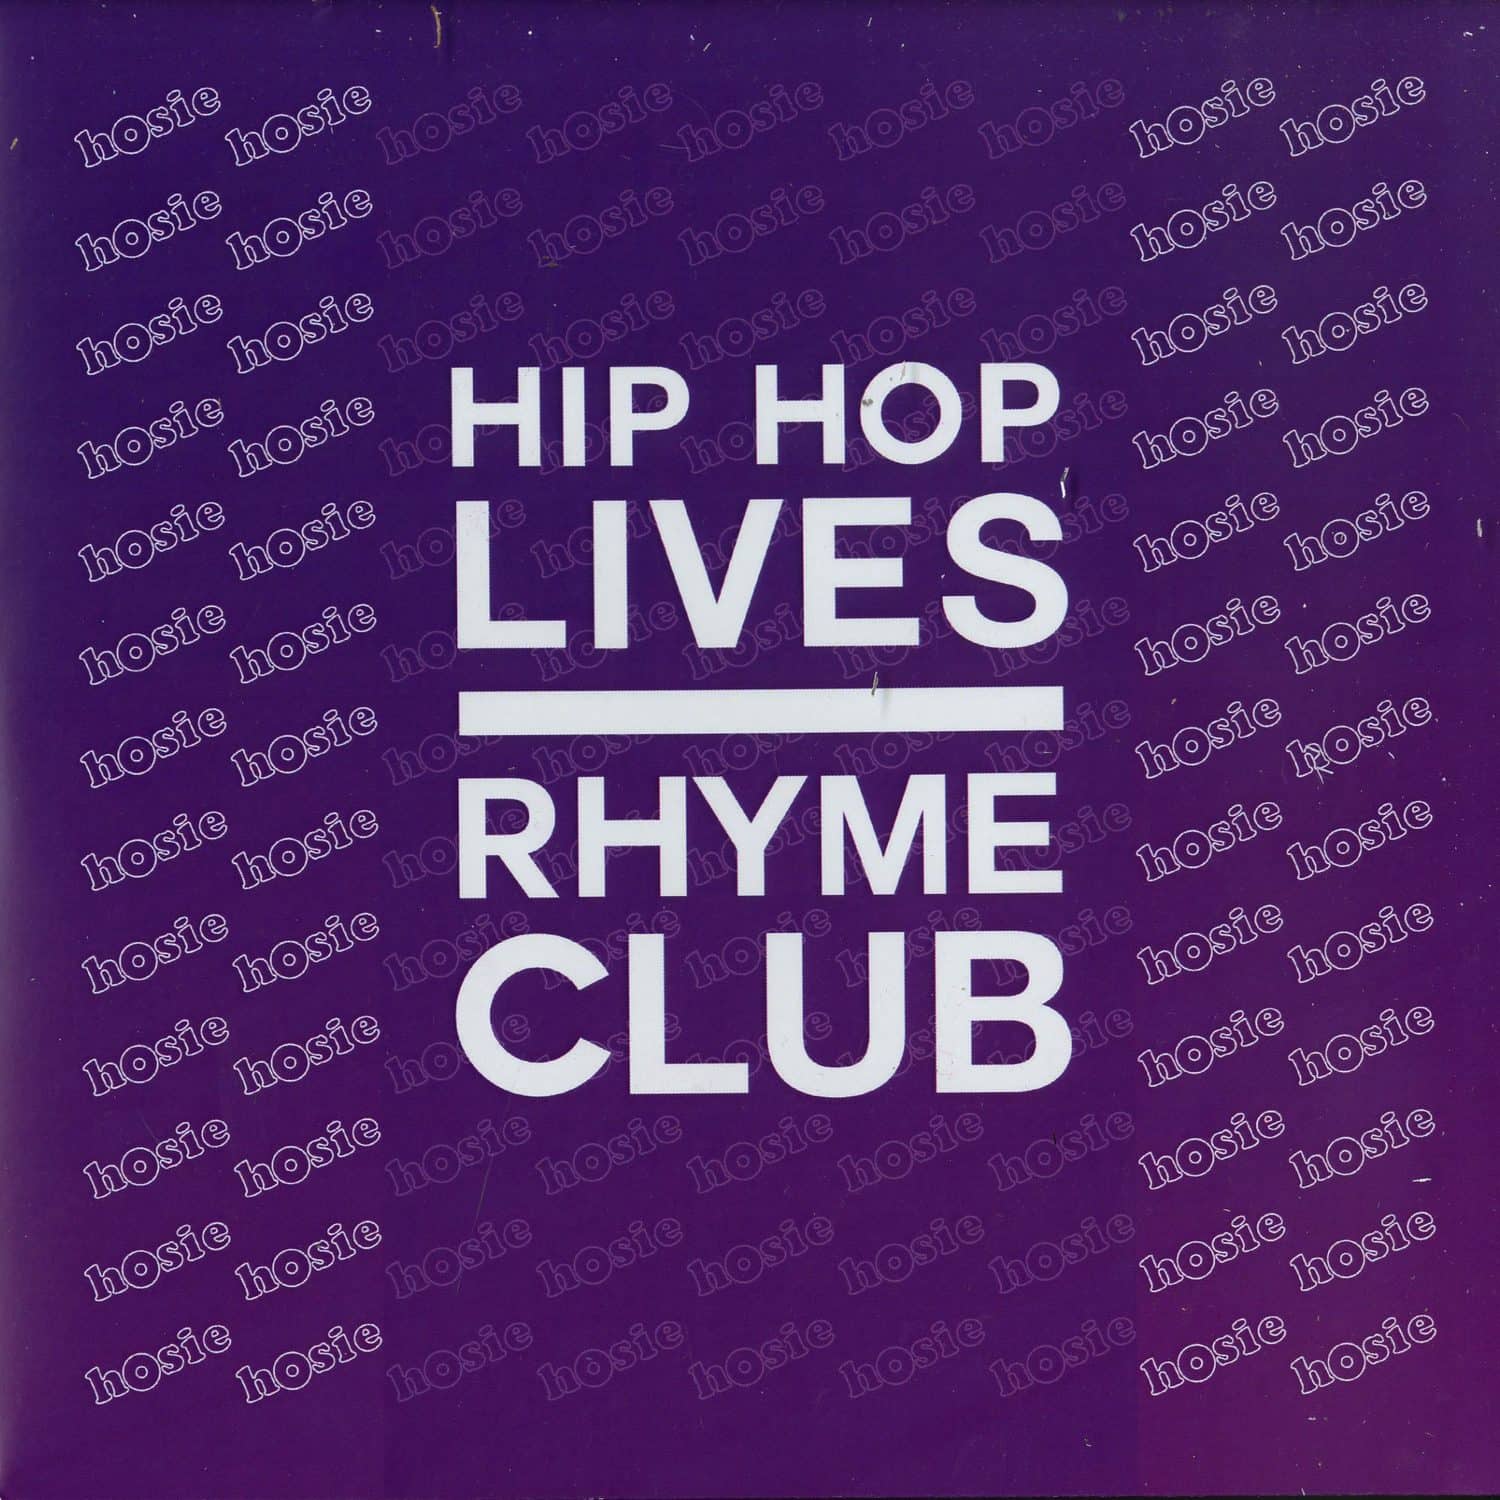 Hosie - HIP HOP LIVES / RHYME CLUB 